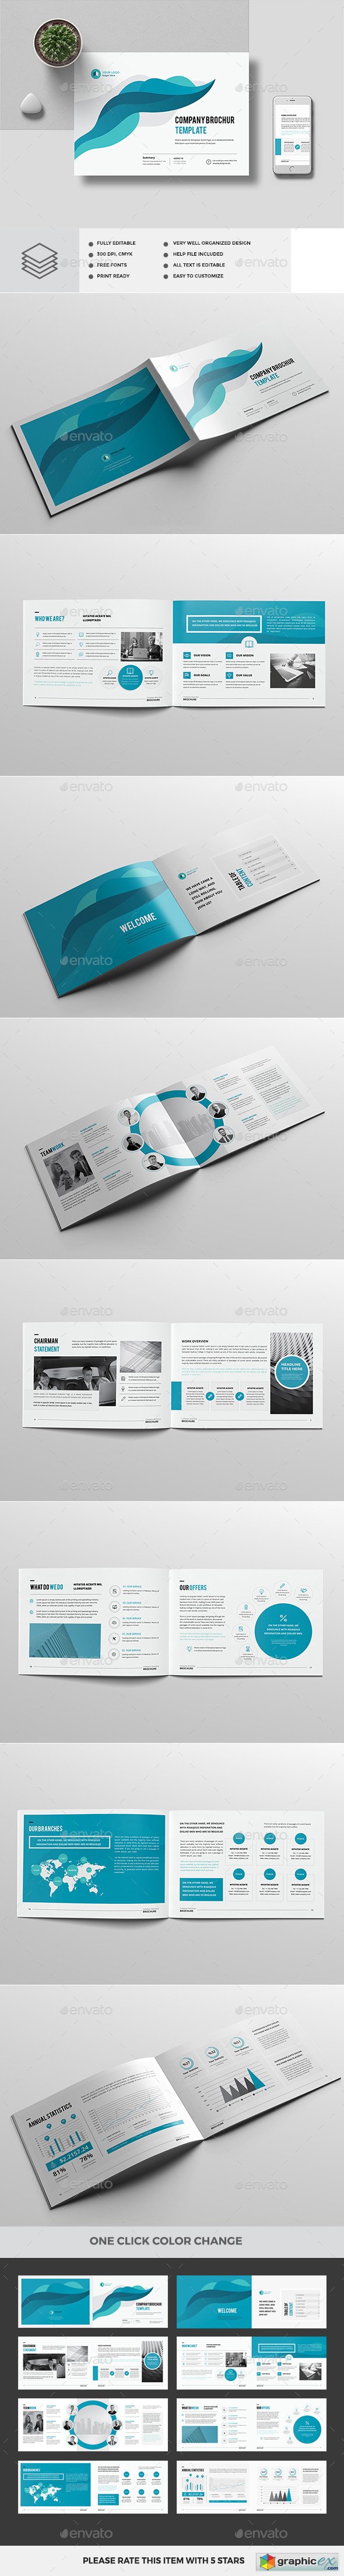 A4 Landscape Company Profile 16 Pages